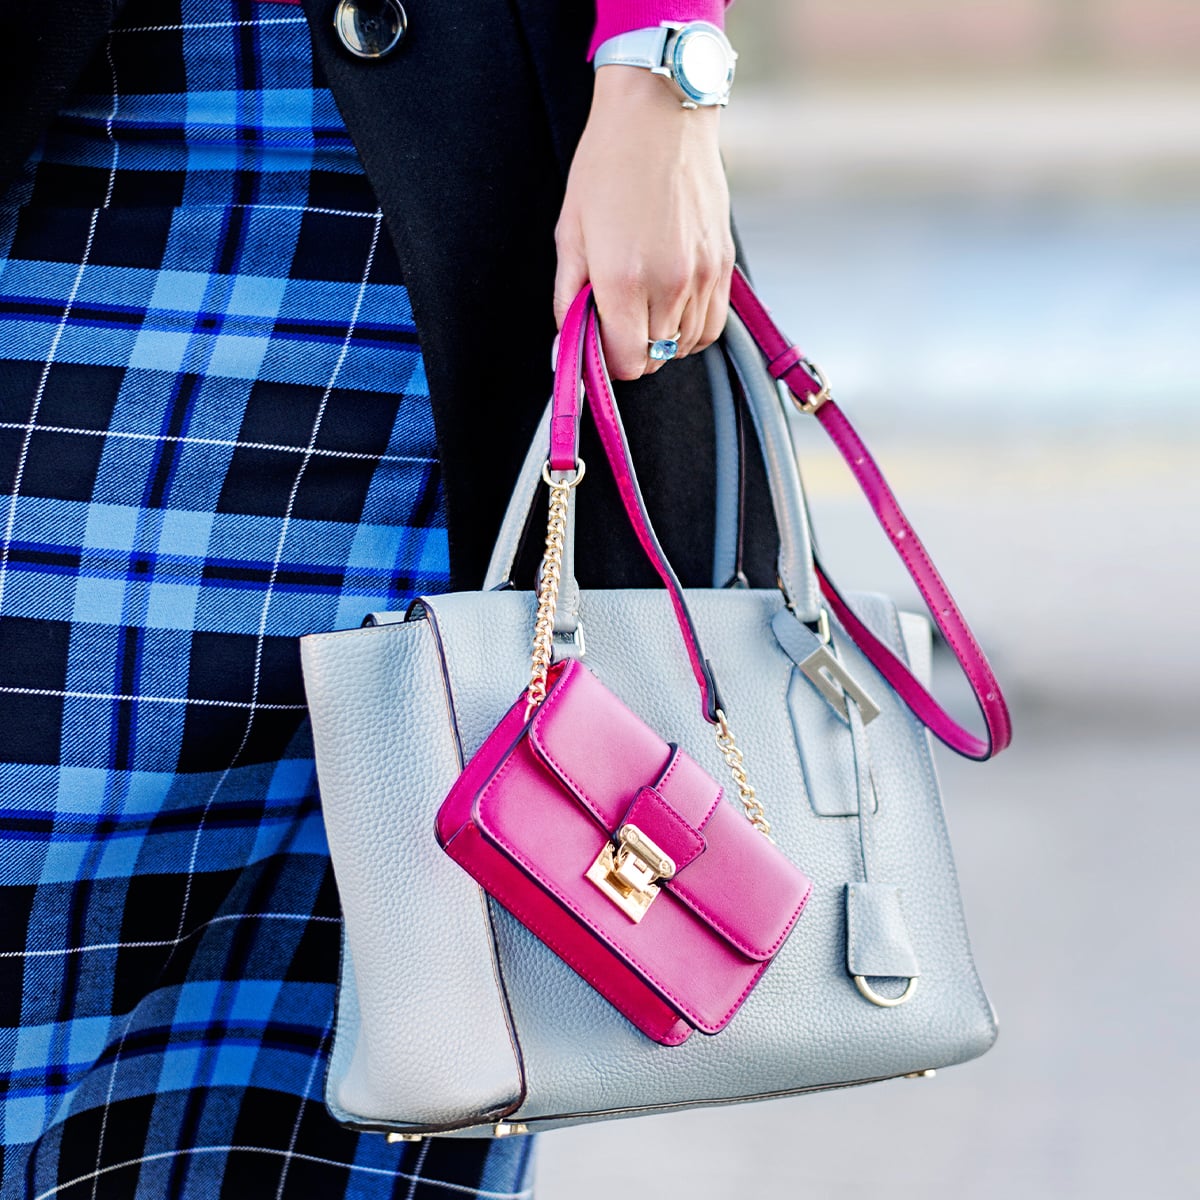 Frau mit Designerhandtasche